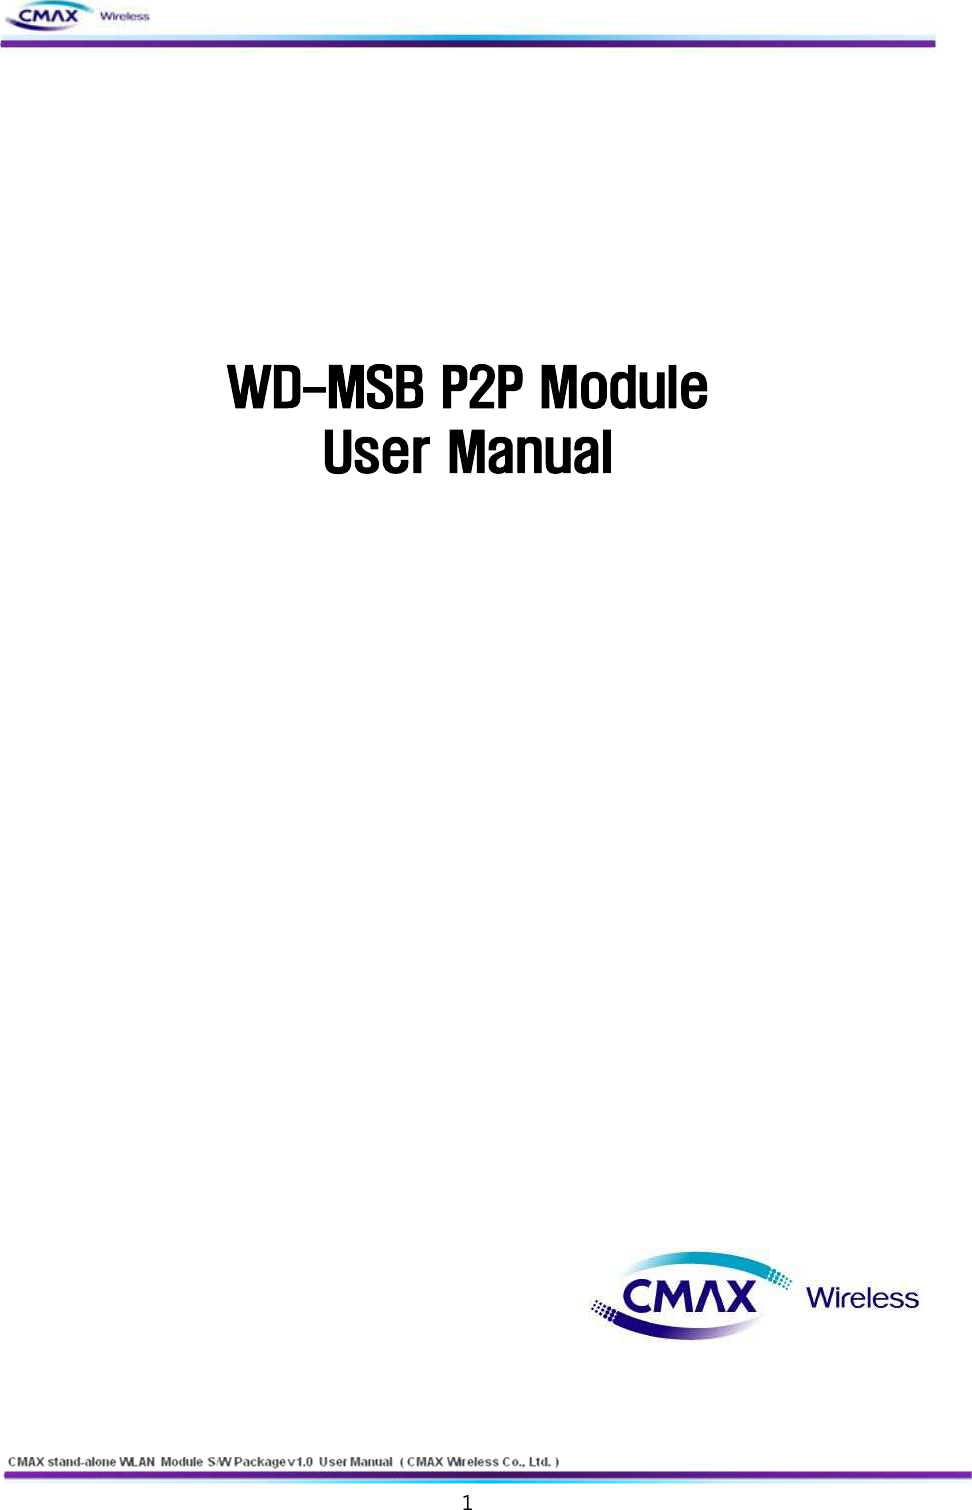   1  www.cmaxwireless.co.kr        WD-MSB P2P Module   User Manual                                                                               